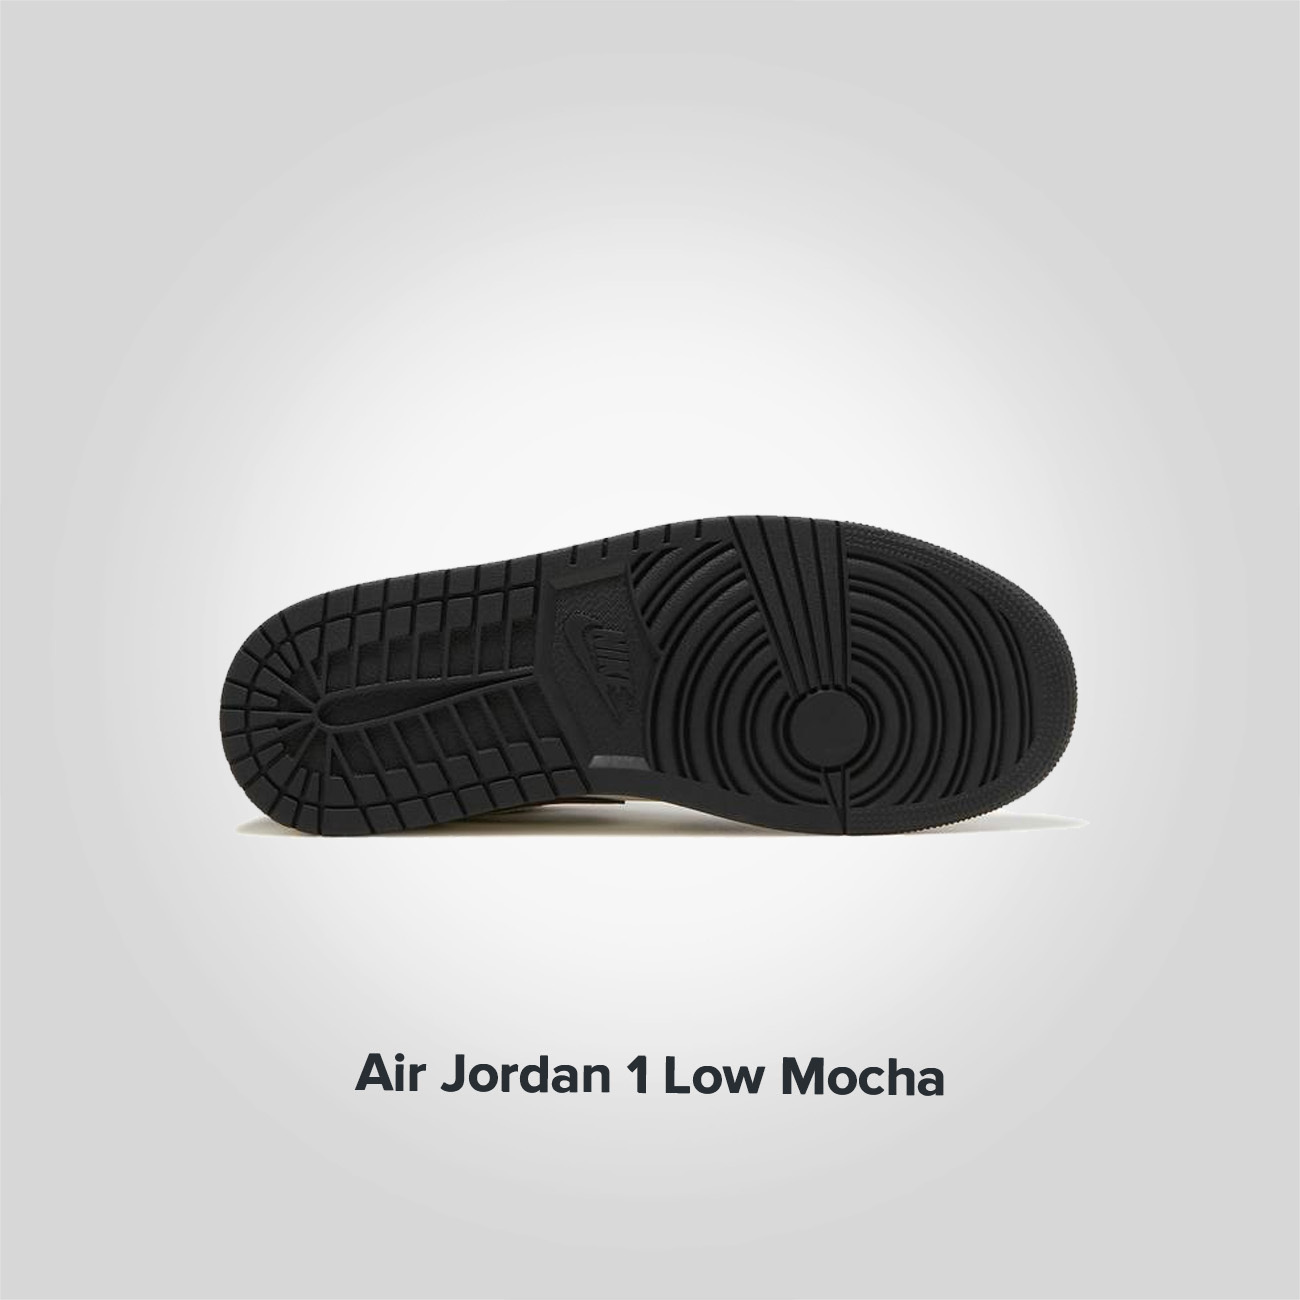 Jordan 1 Low Mocha